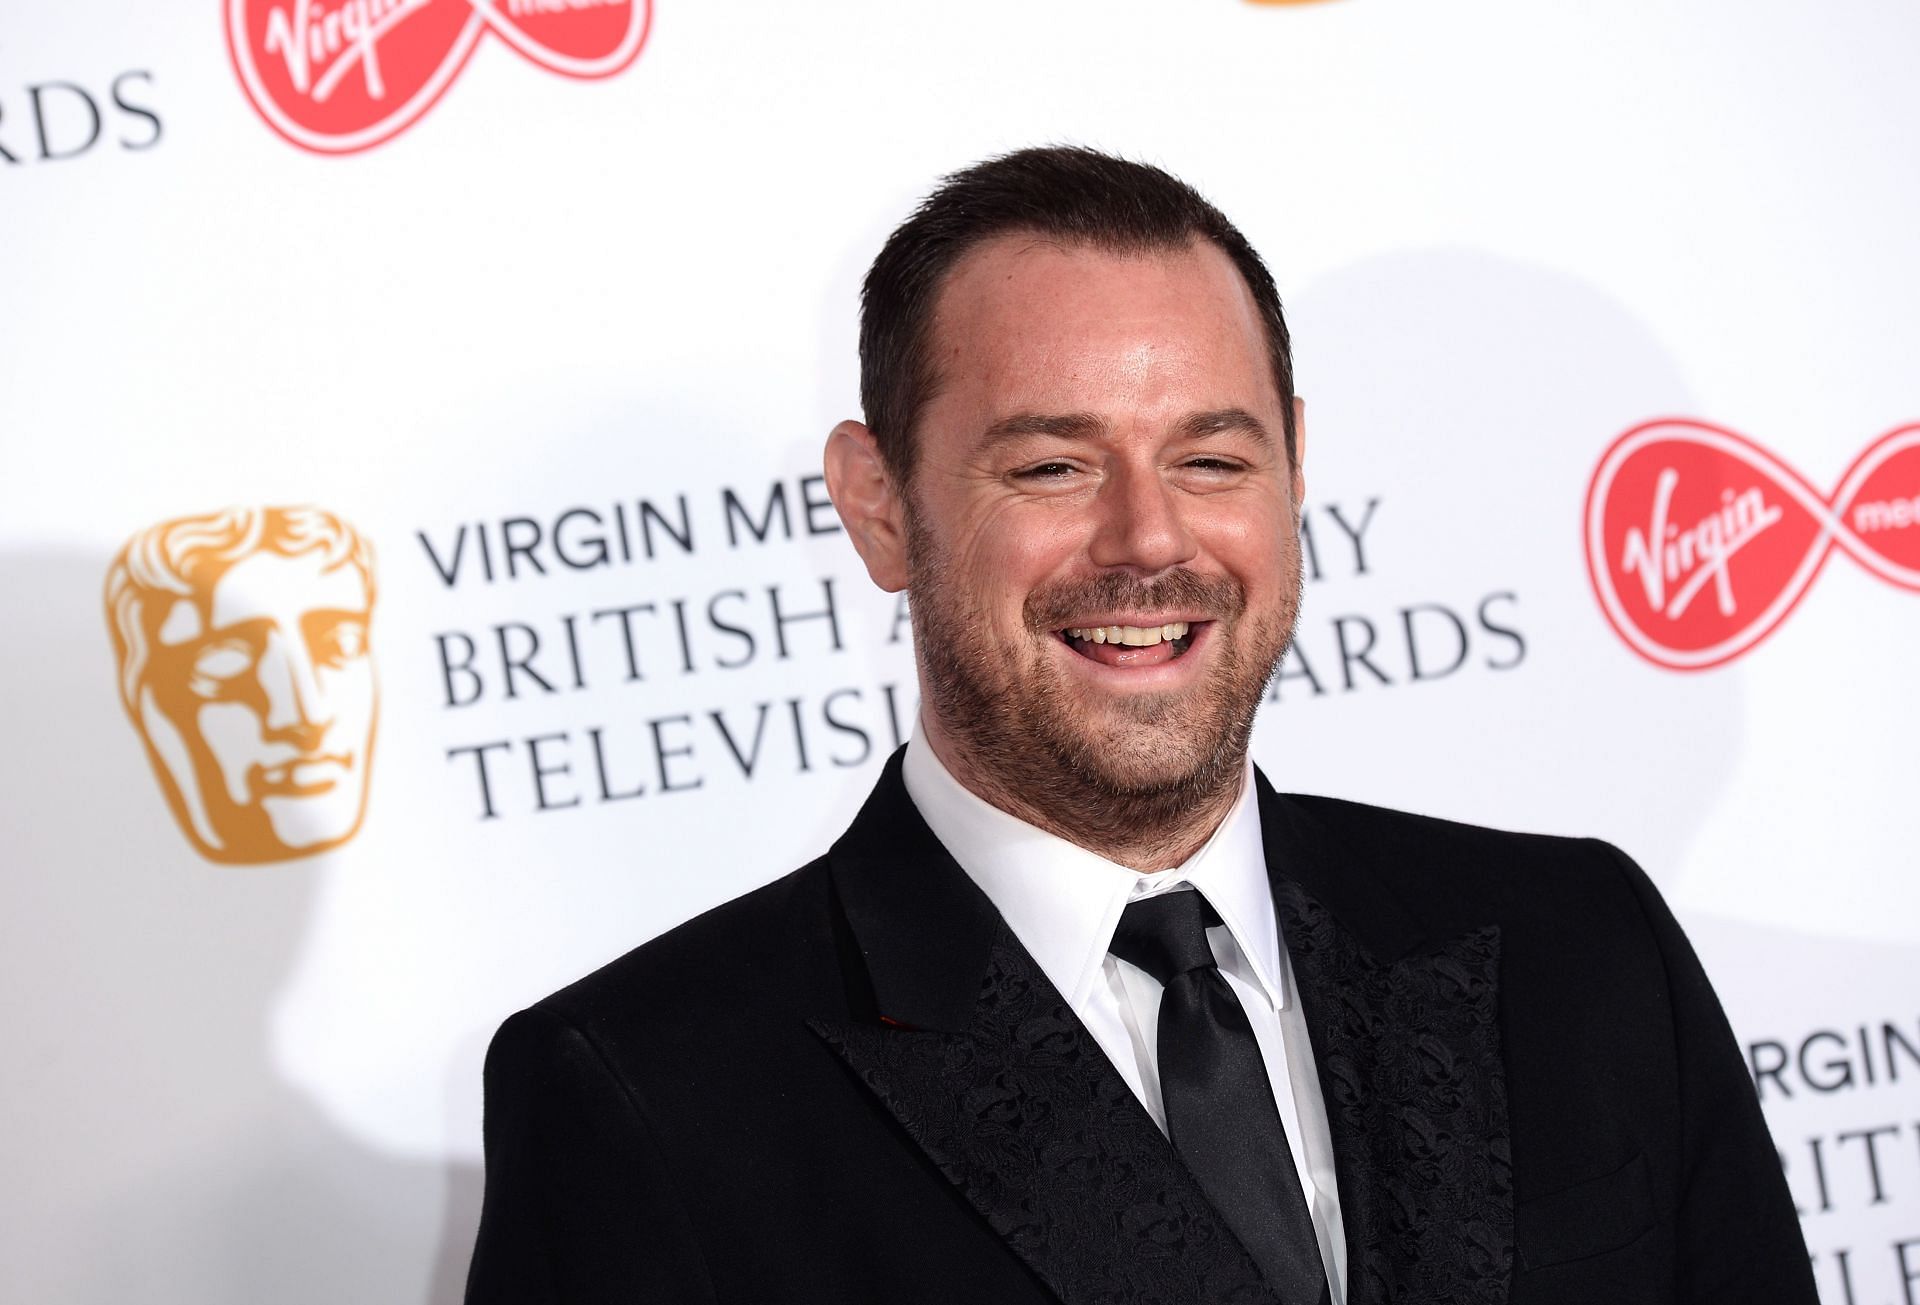 Virgin Media British Academy Television Awards 2019 - Press Room